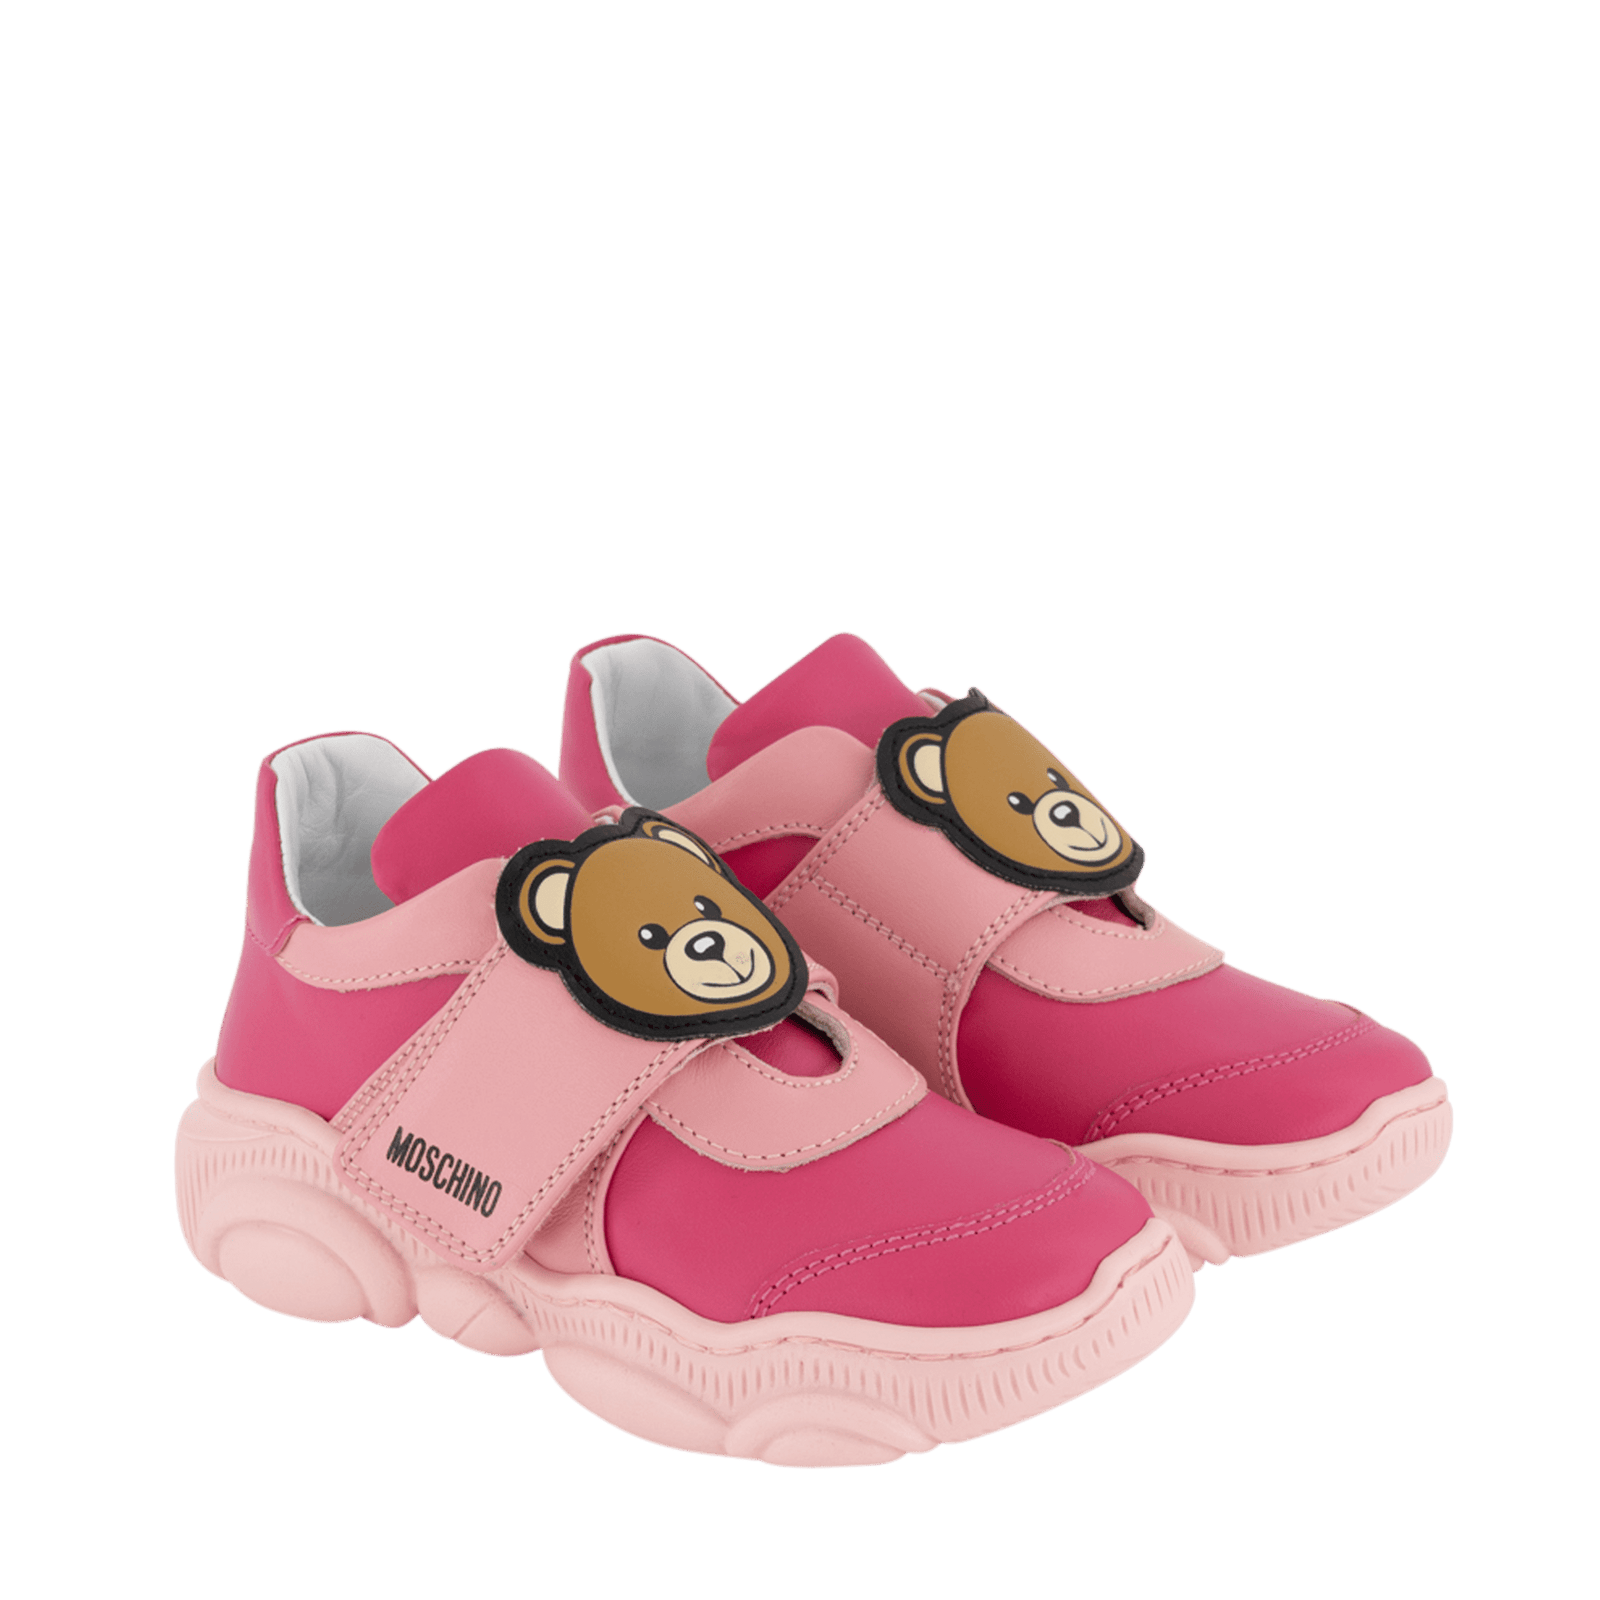 Moschino Kinder Meisjes Sneakers Roze 20